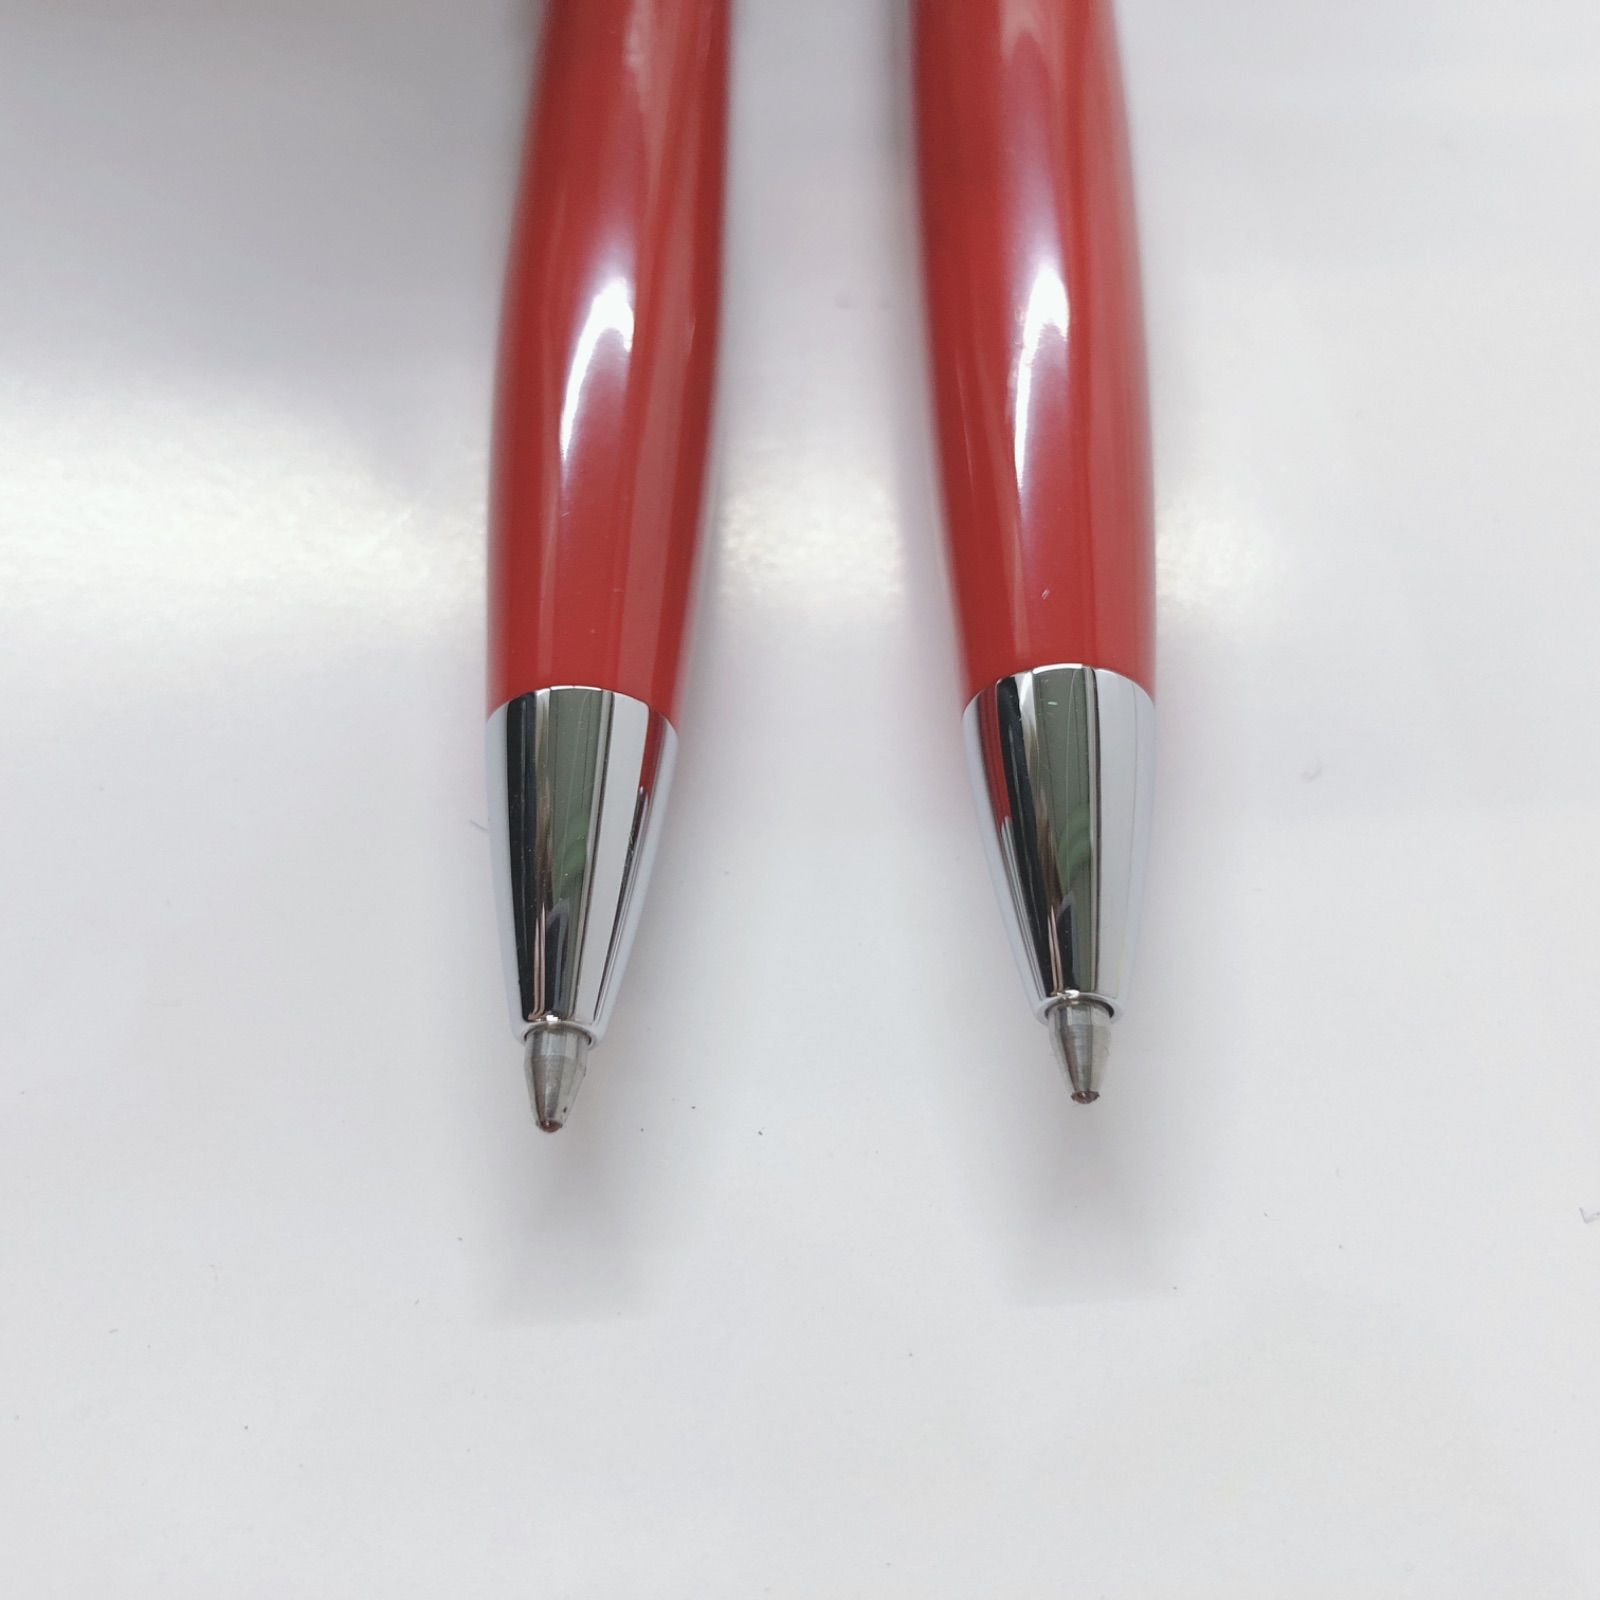 フェラーリボールペン 2本セット - 筆記具